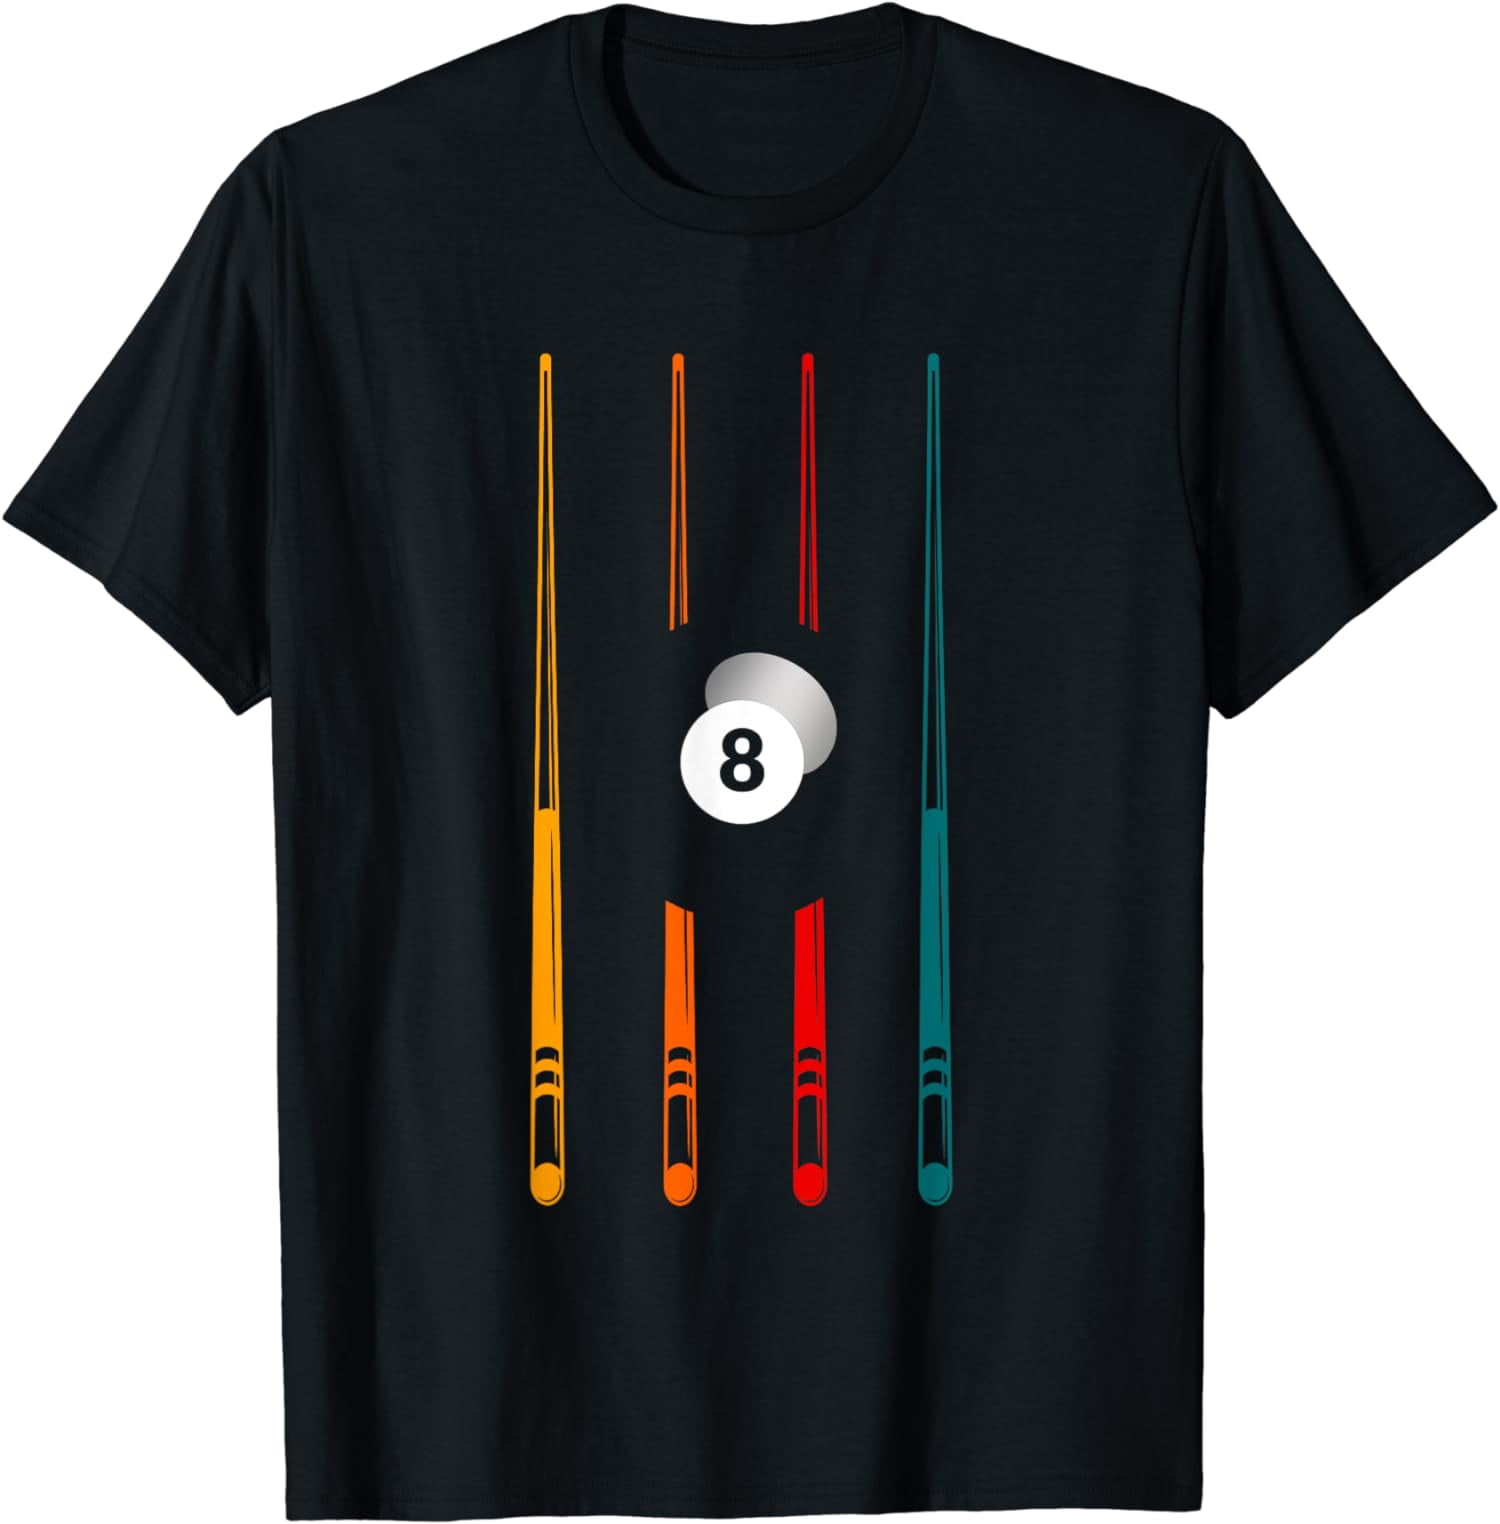 Billiards Pool Player Apparel - Billiard T-Shirt - Walmart.com